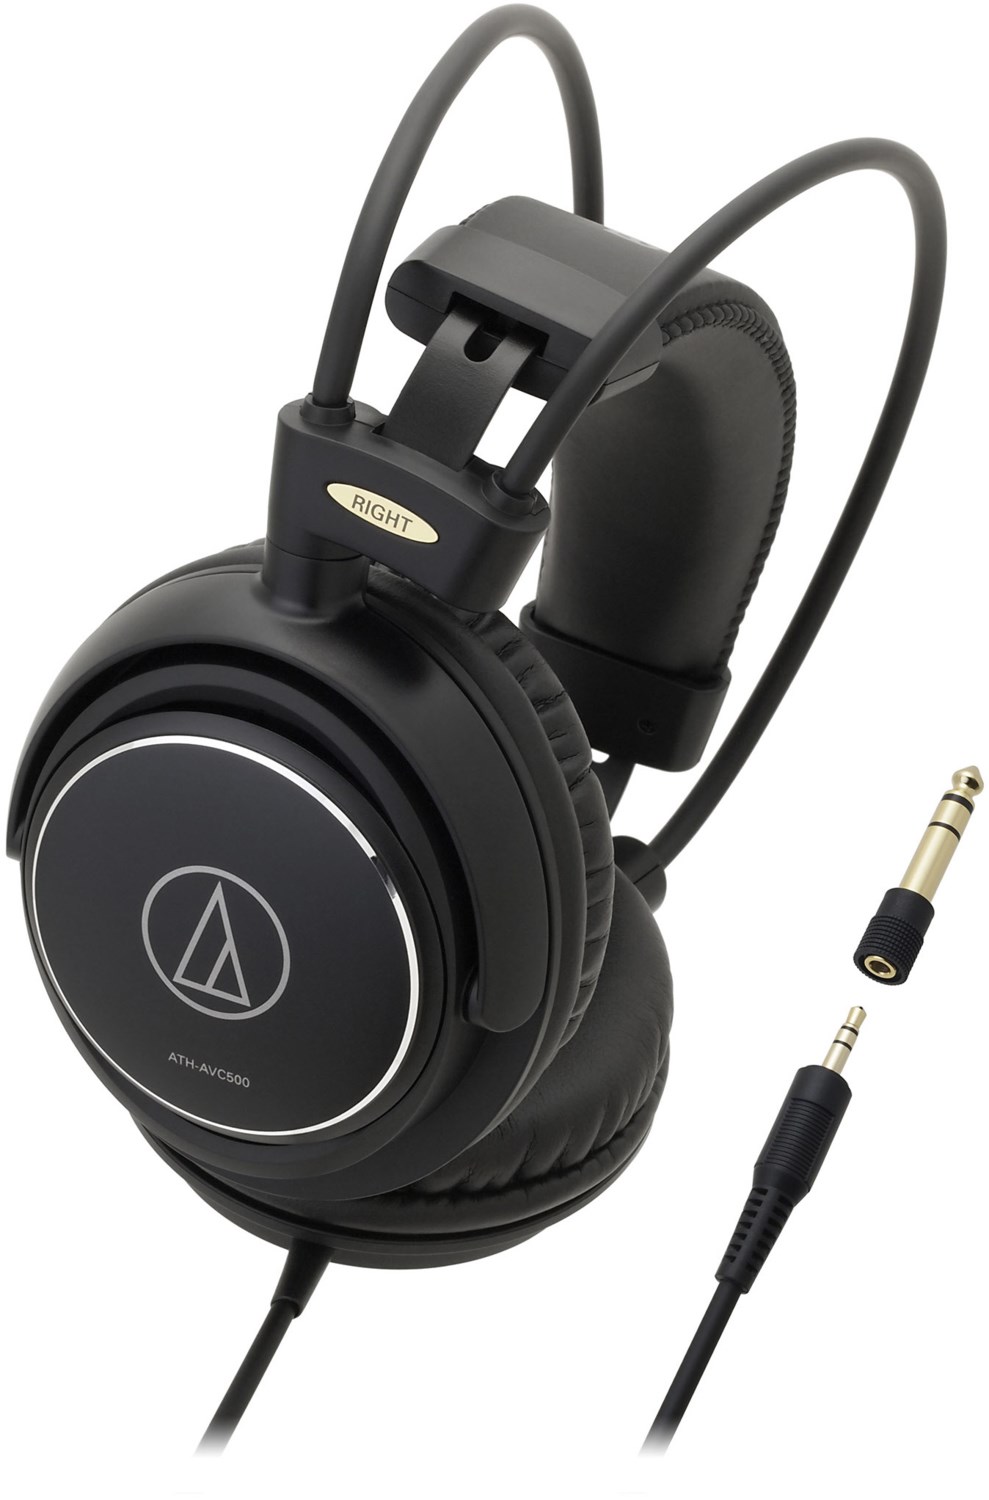 ATH-AVC500 Kopfhörer mit Kabel von Audio-Technica